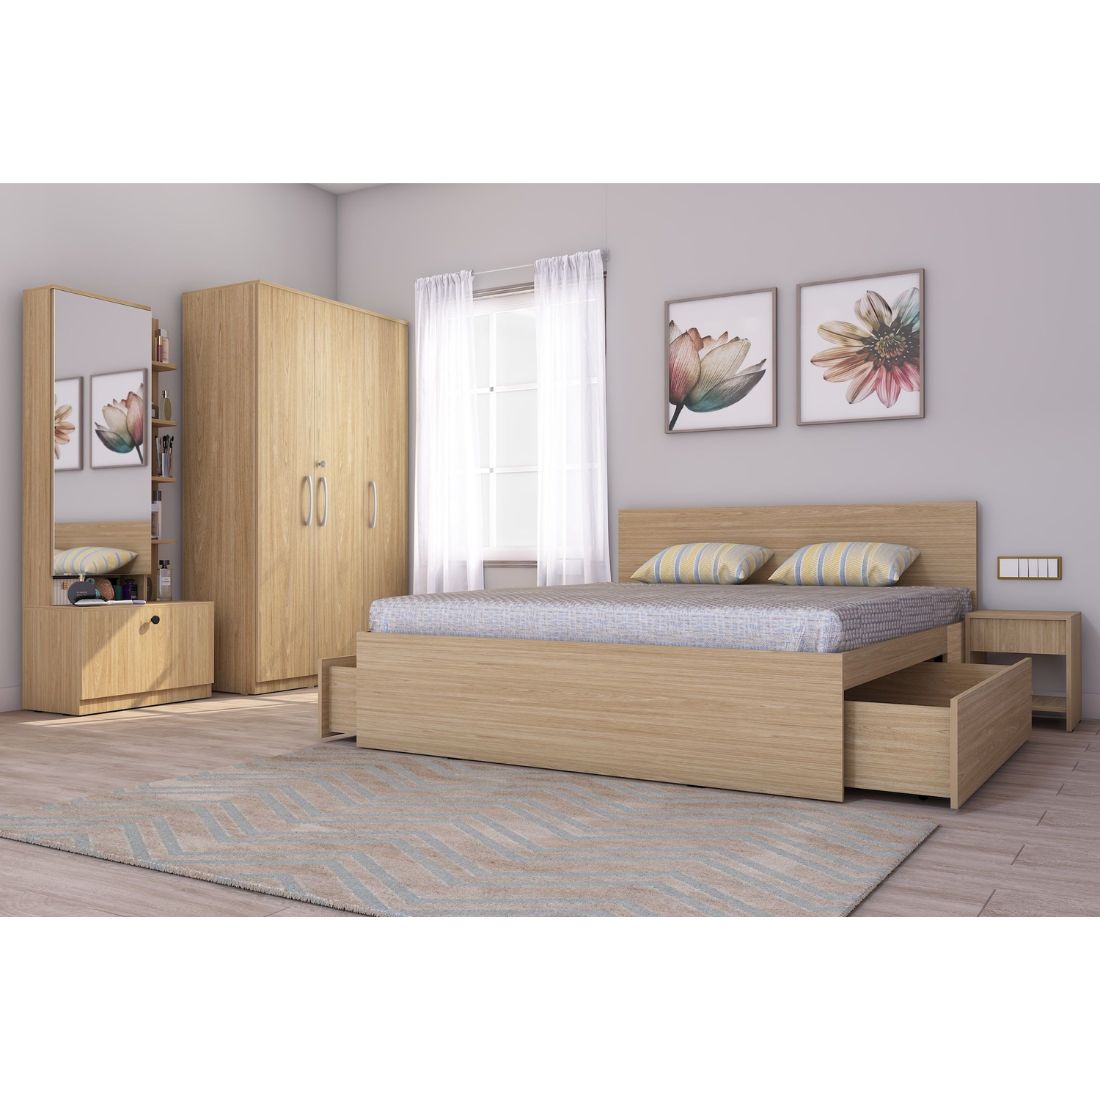 Royale 3: Set of 5 Bedroom Furniture - 3 door Wardrobe, King Bed, Dresser and Side Tables